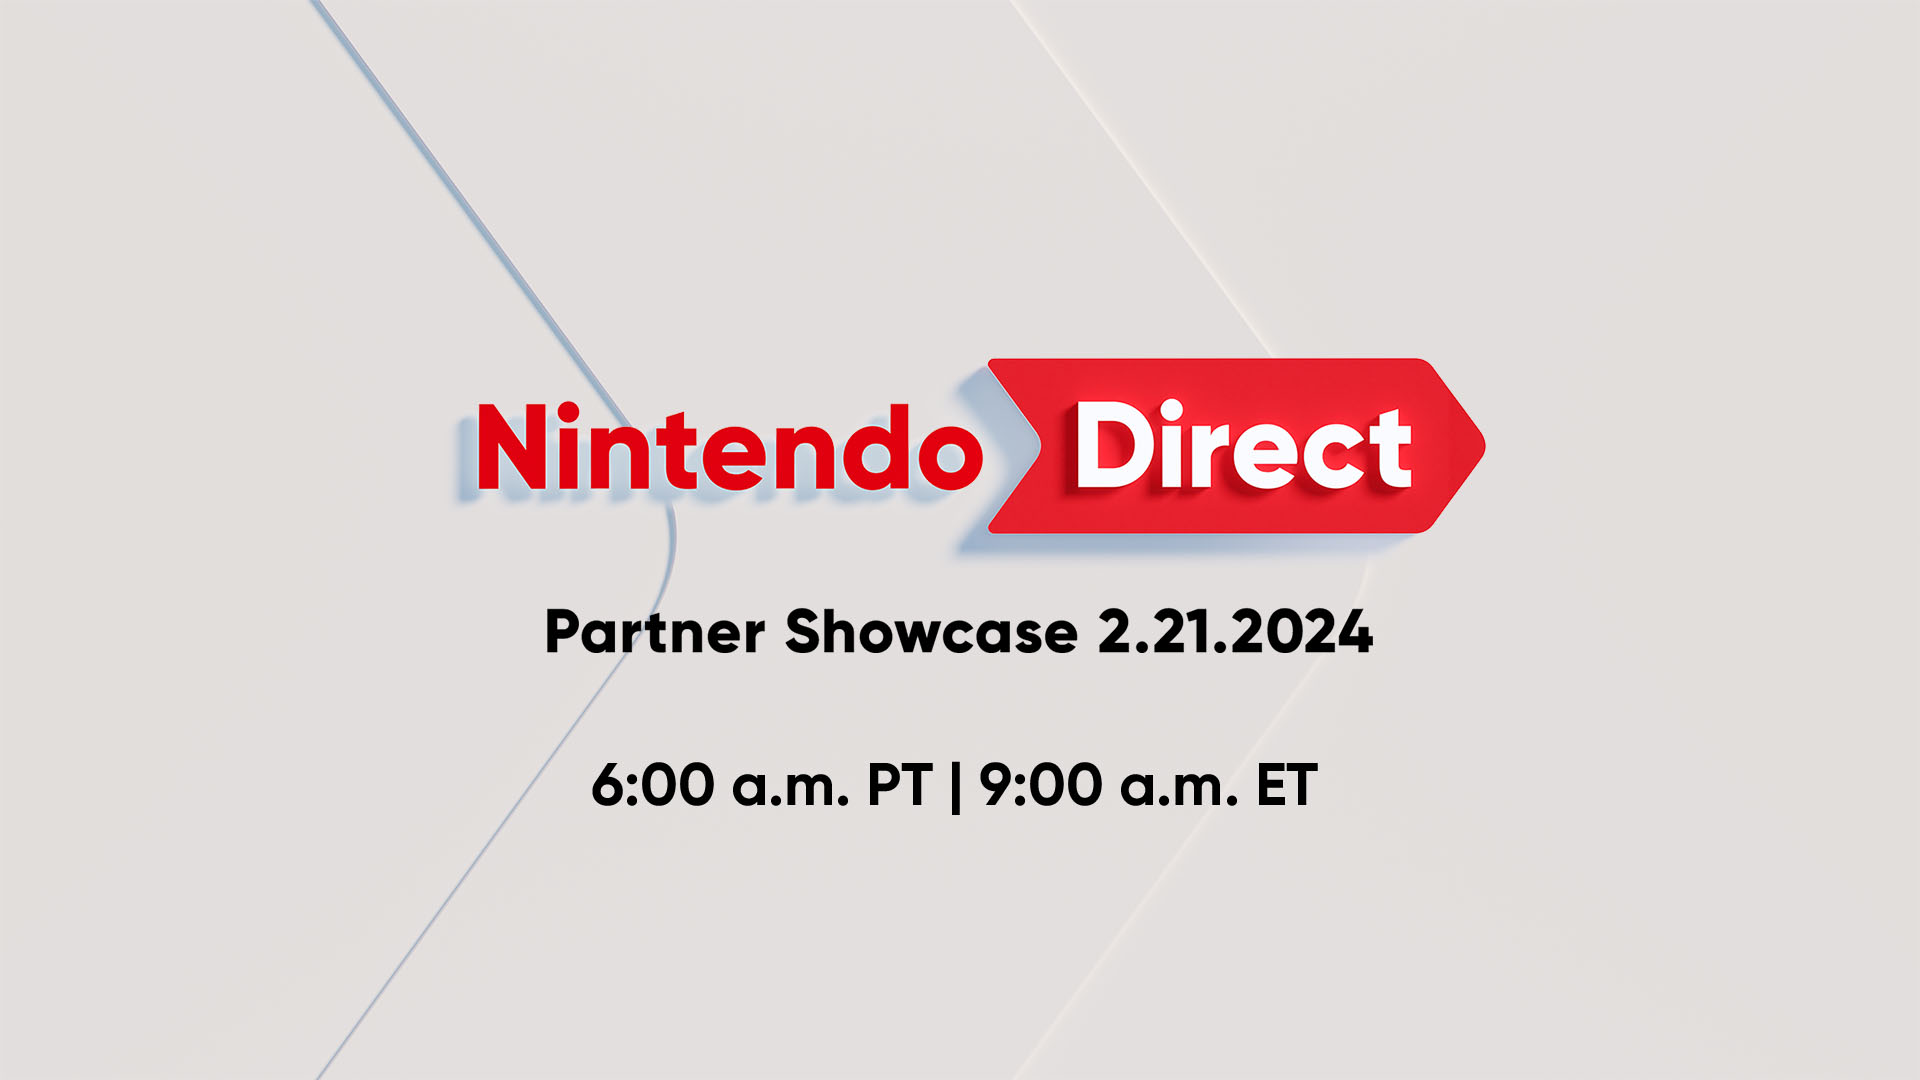 La información de un Nintendo Direct aparece sobre un fondo gris.